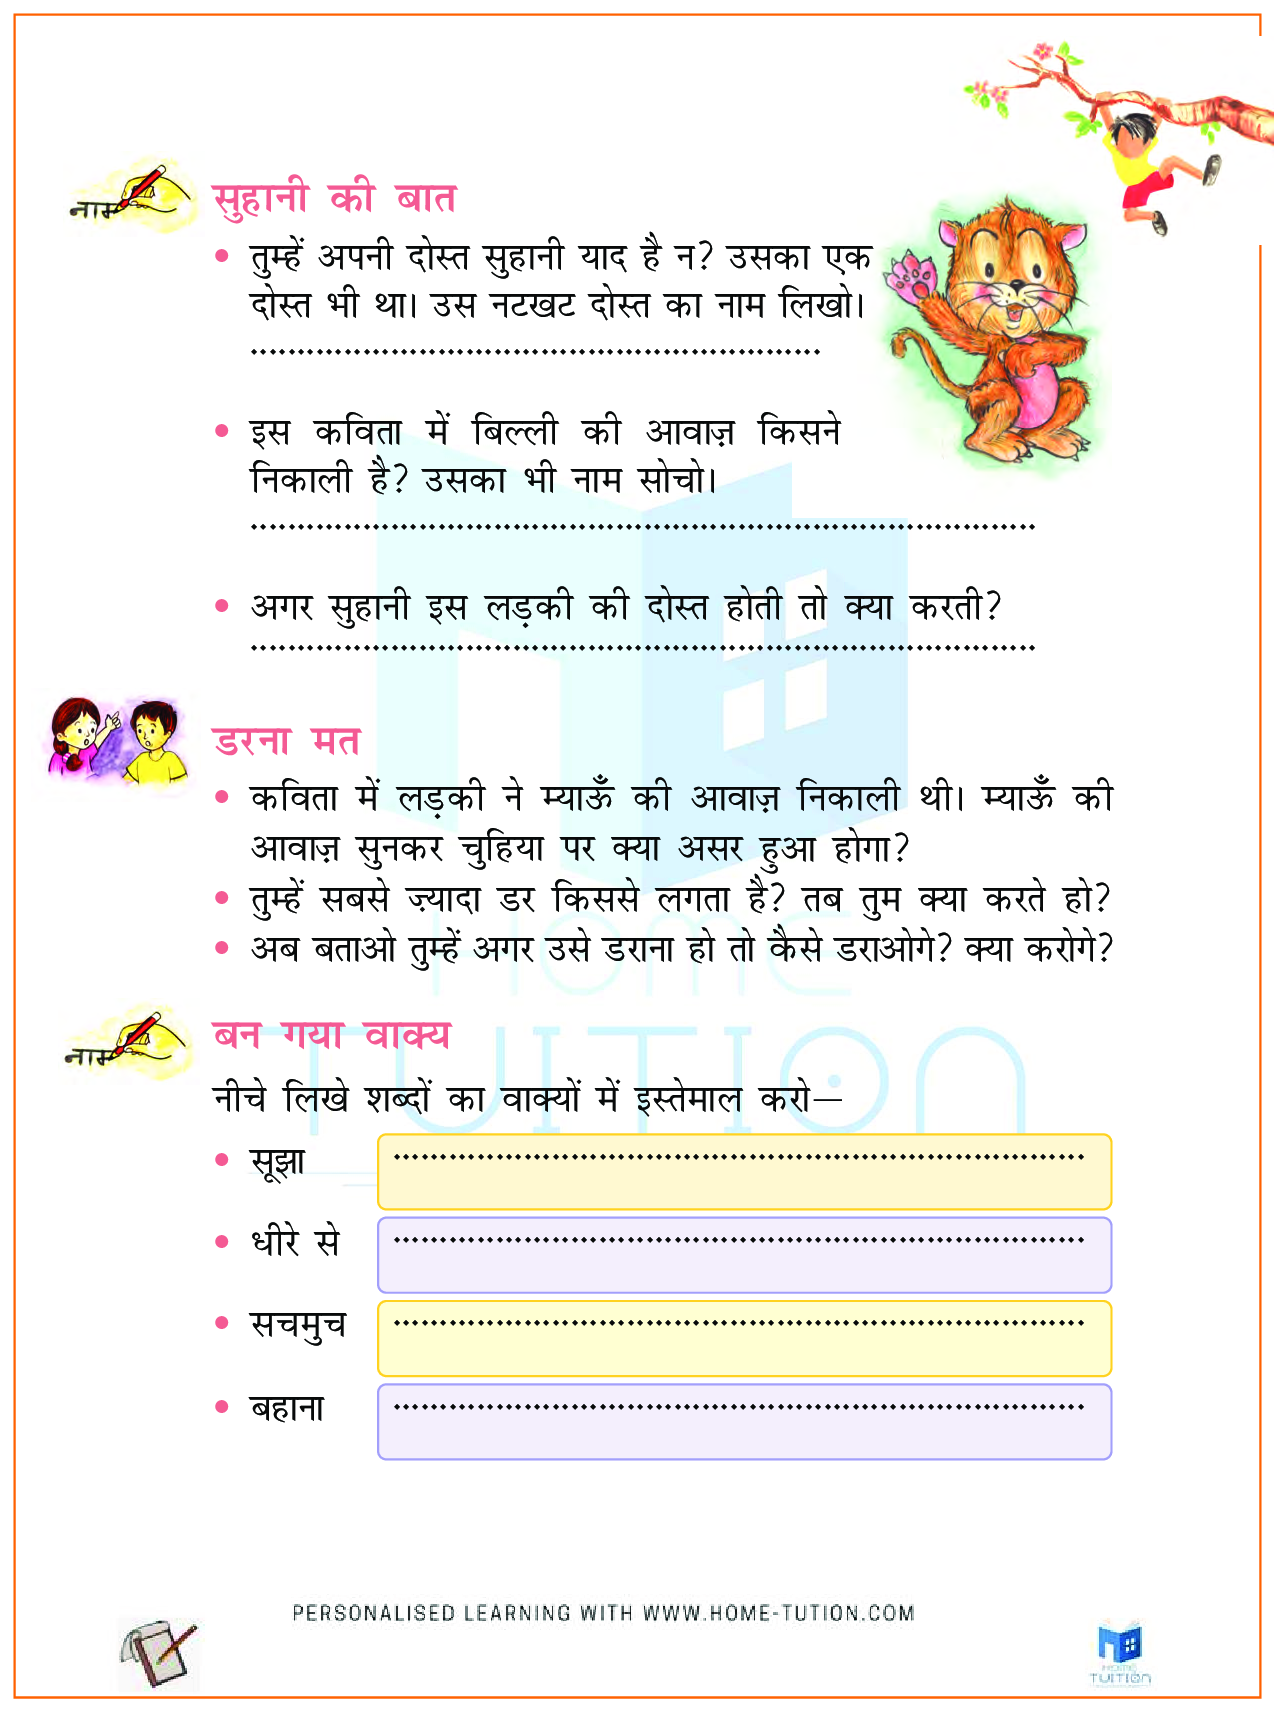 NCERT Solutions for Class 2 Hindi म्याऊँ म्याऊँ